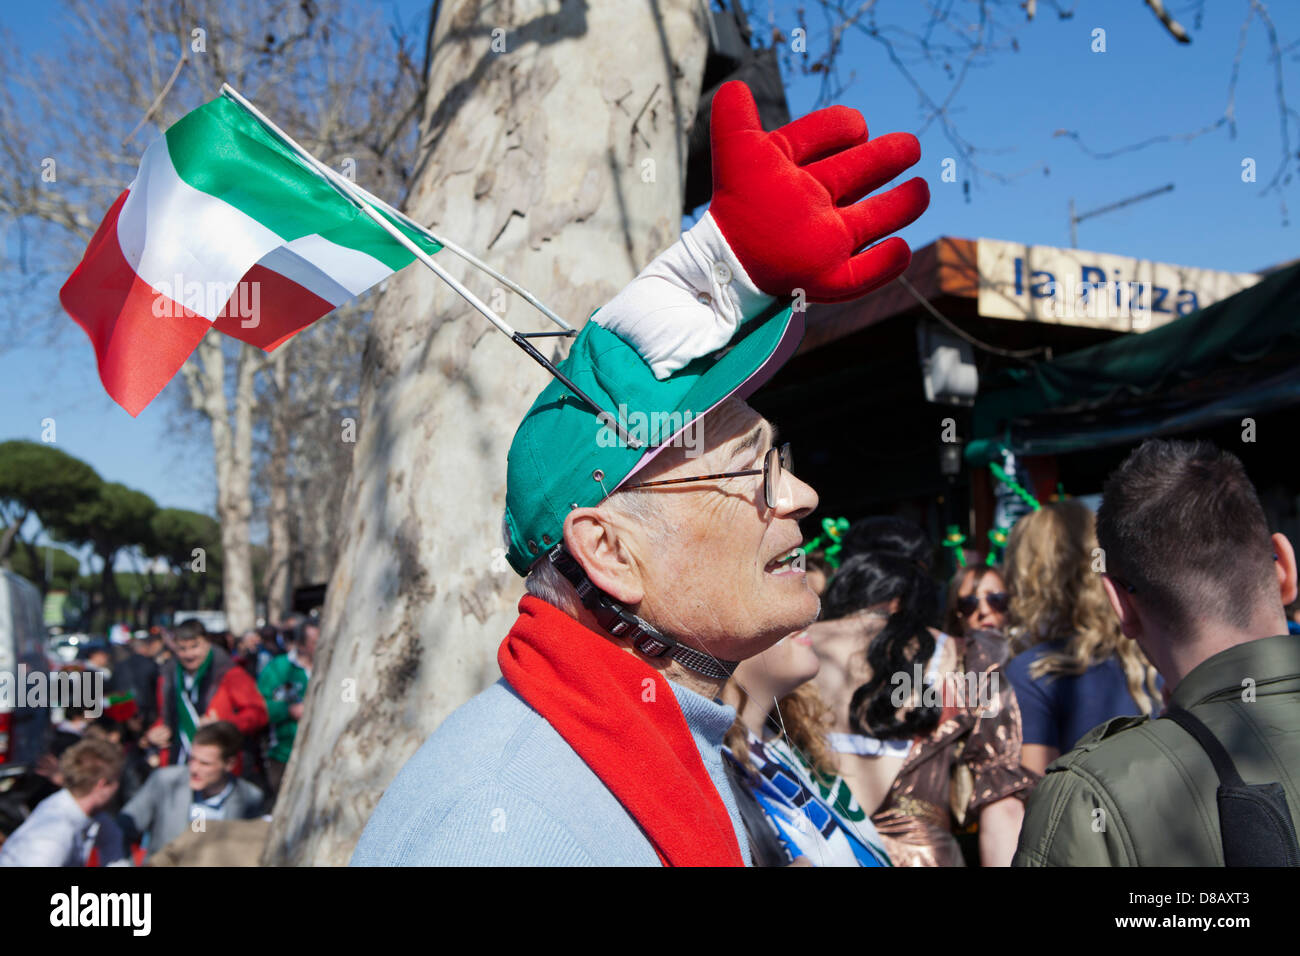 Italian rugby fan wearing funny hat Stock Photo - Alamy